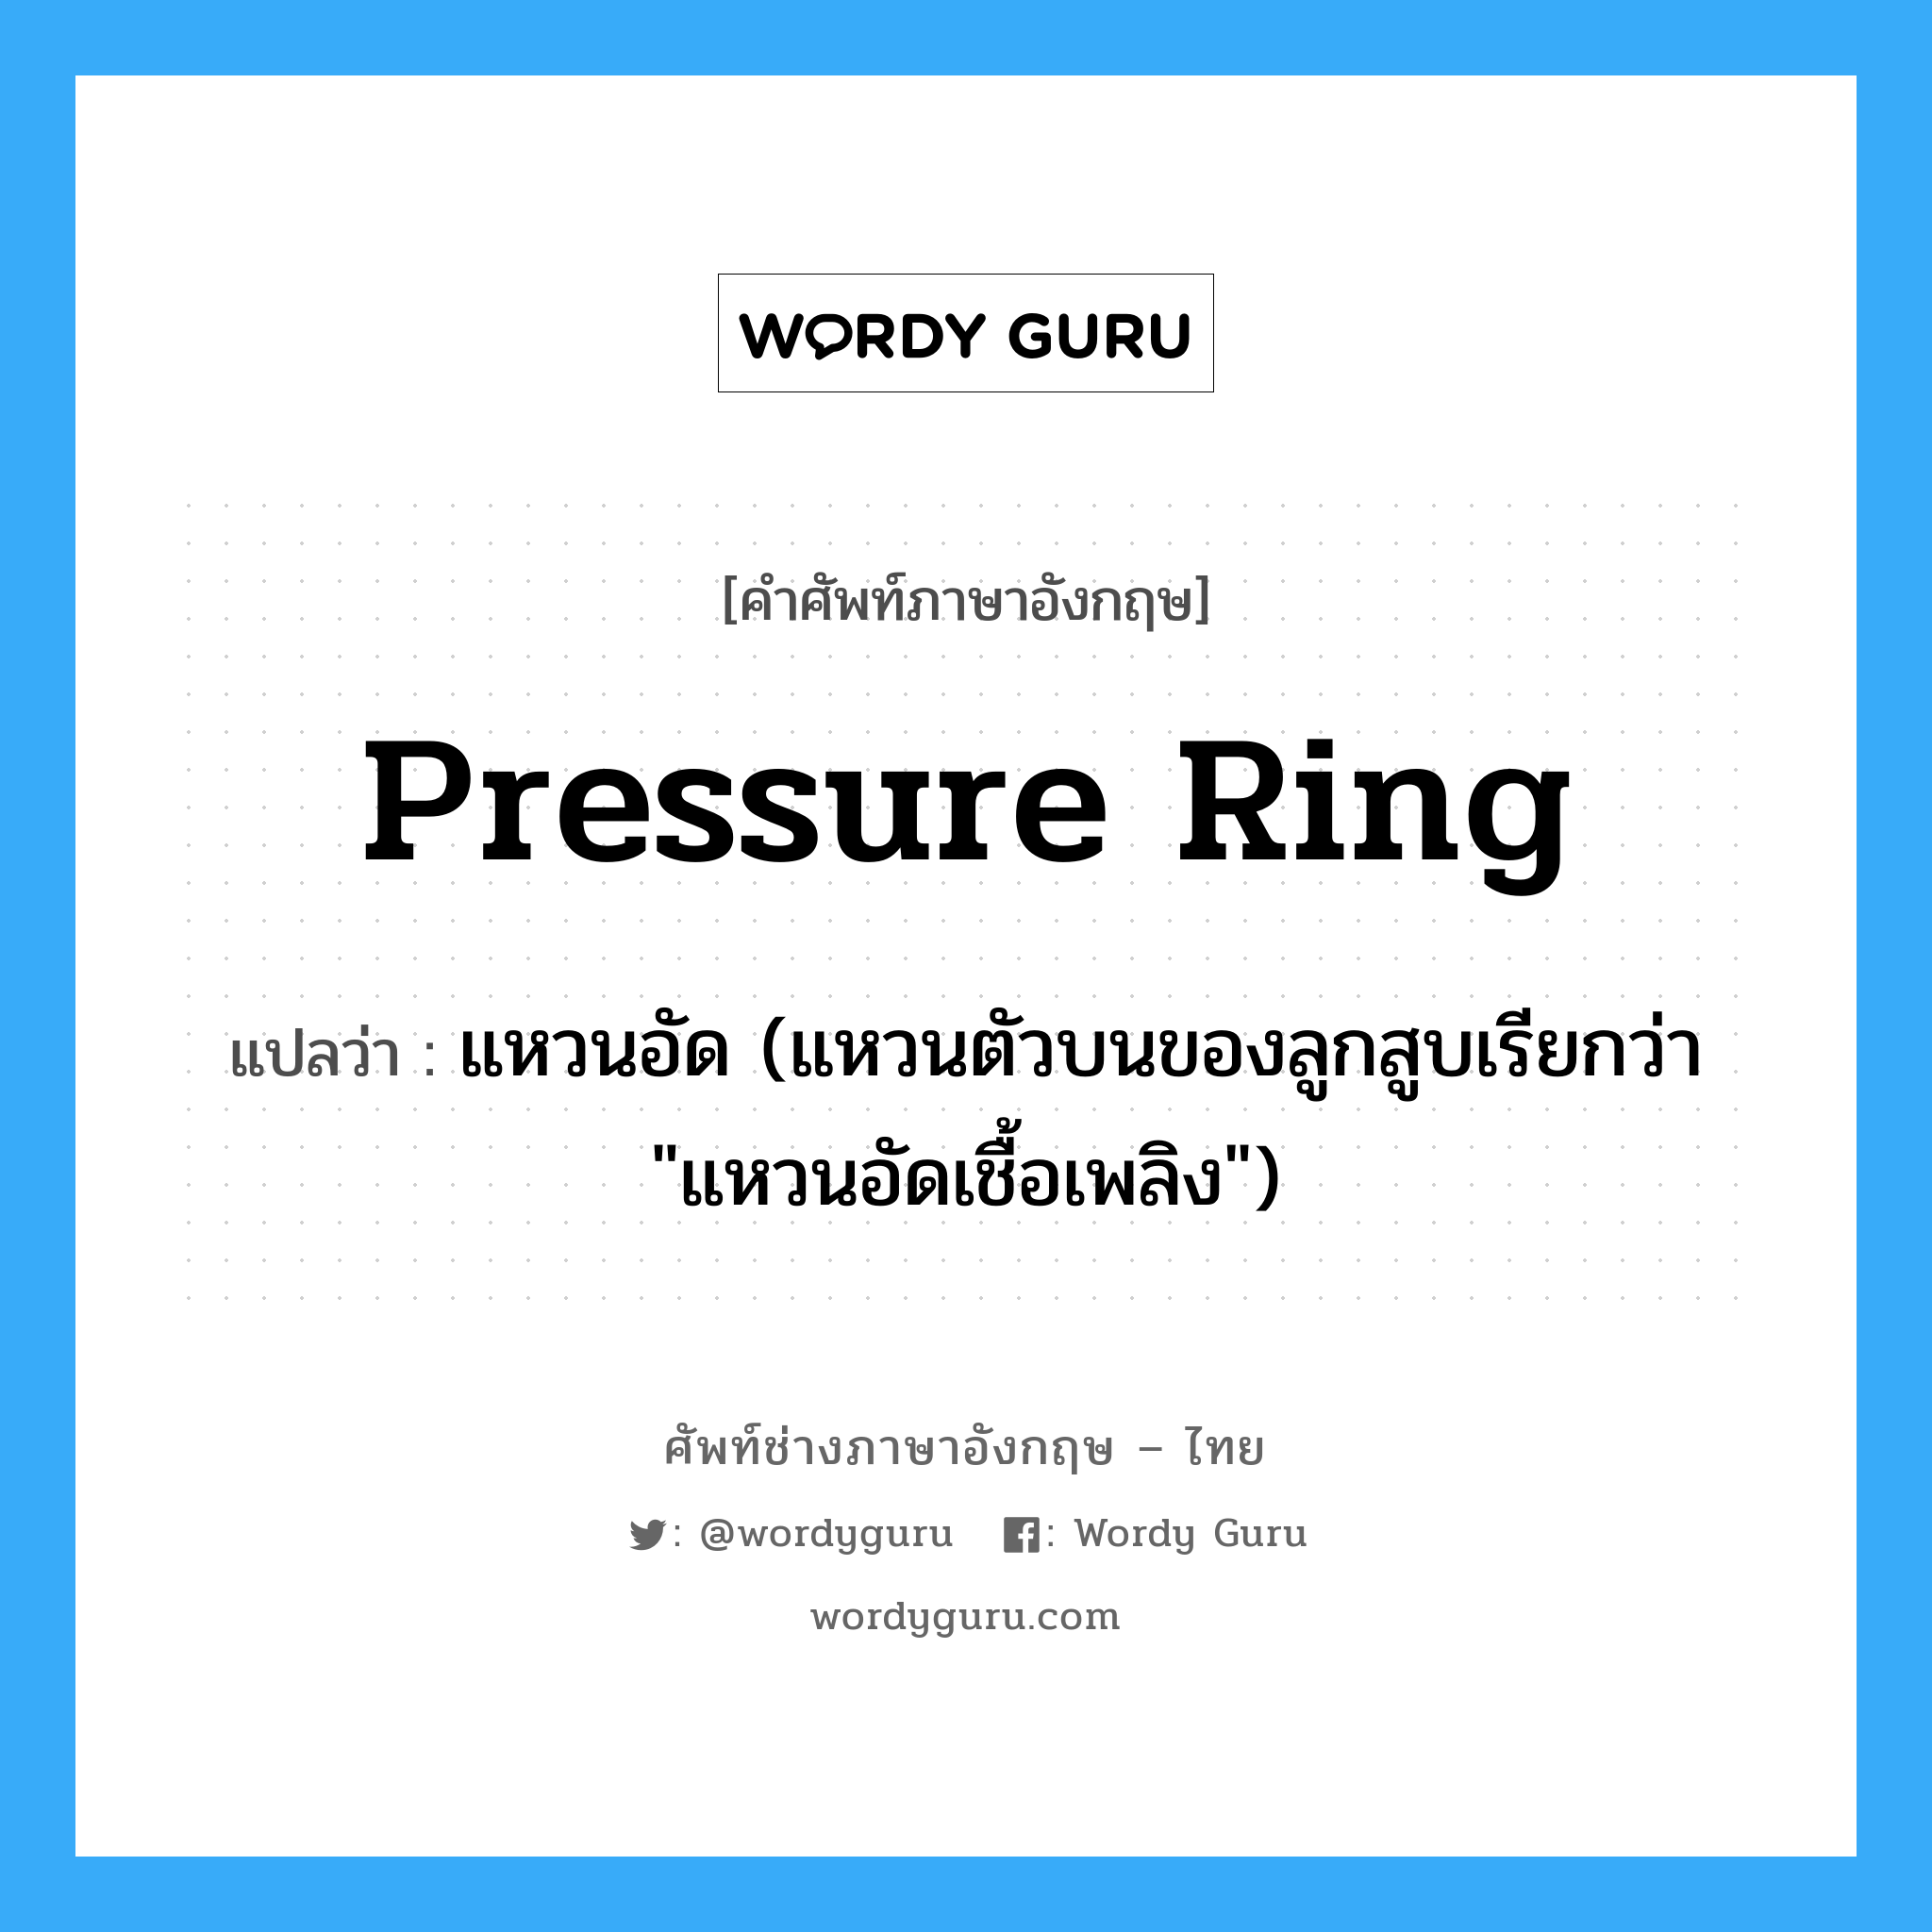 pressure ring แปลว่า?, คำศัพท์ช่างภาษาอังกฤษ - ไทย pressure ring คำศัพท์ภาษาอังกฤษ pressure ring แปลว่า แหวนอัด (แหวนตัวบนของลูกสูบเรียกว่า "แหวนอัดเชื้อเพลิง")